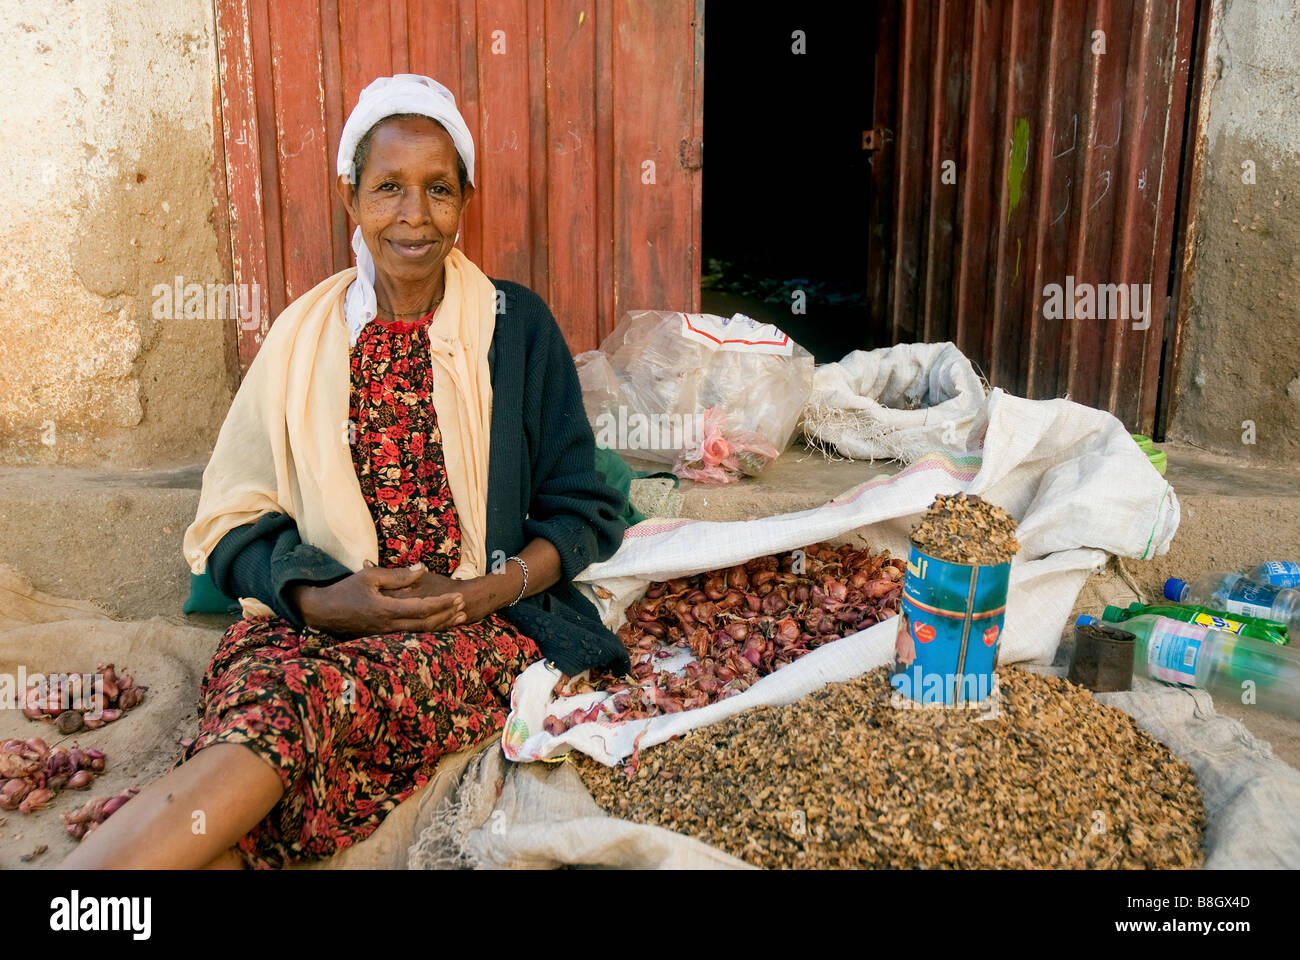 La ville de Harar Ethiopie Afrique de l'est vendeur de légumes du marché dame femme Banque D'Images